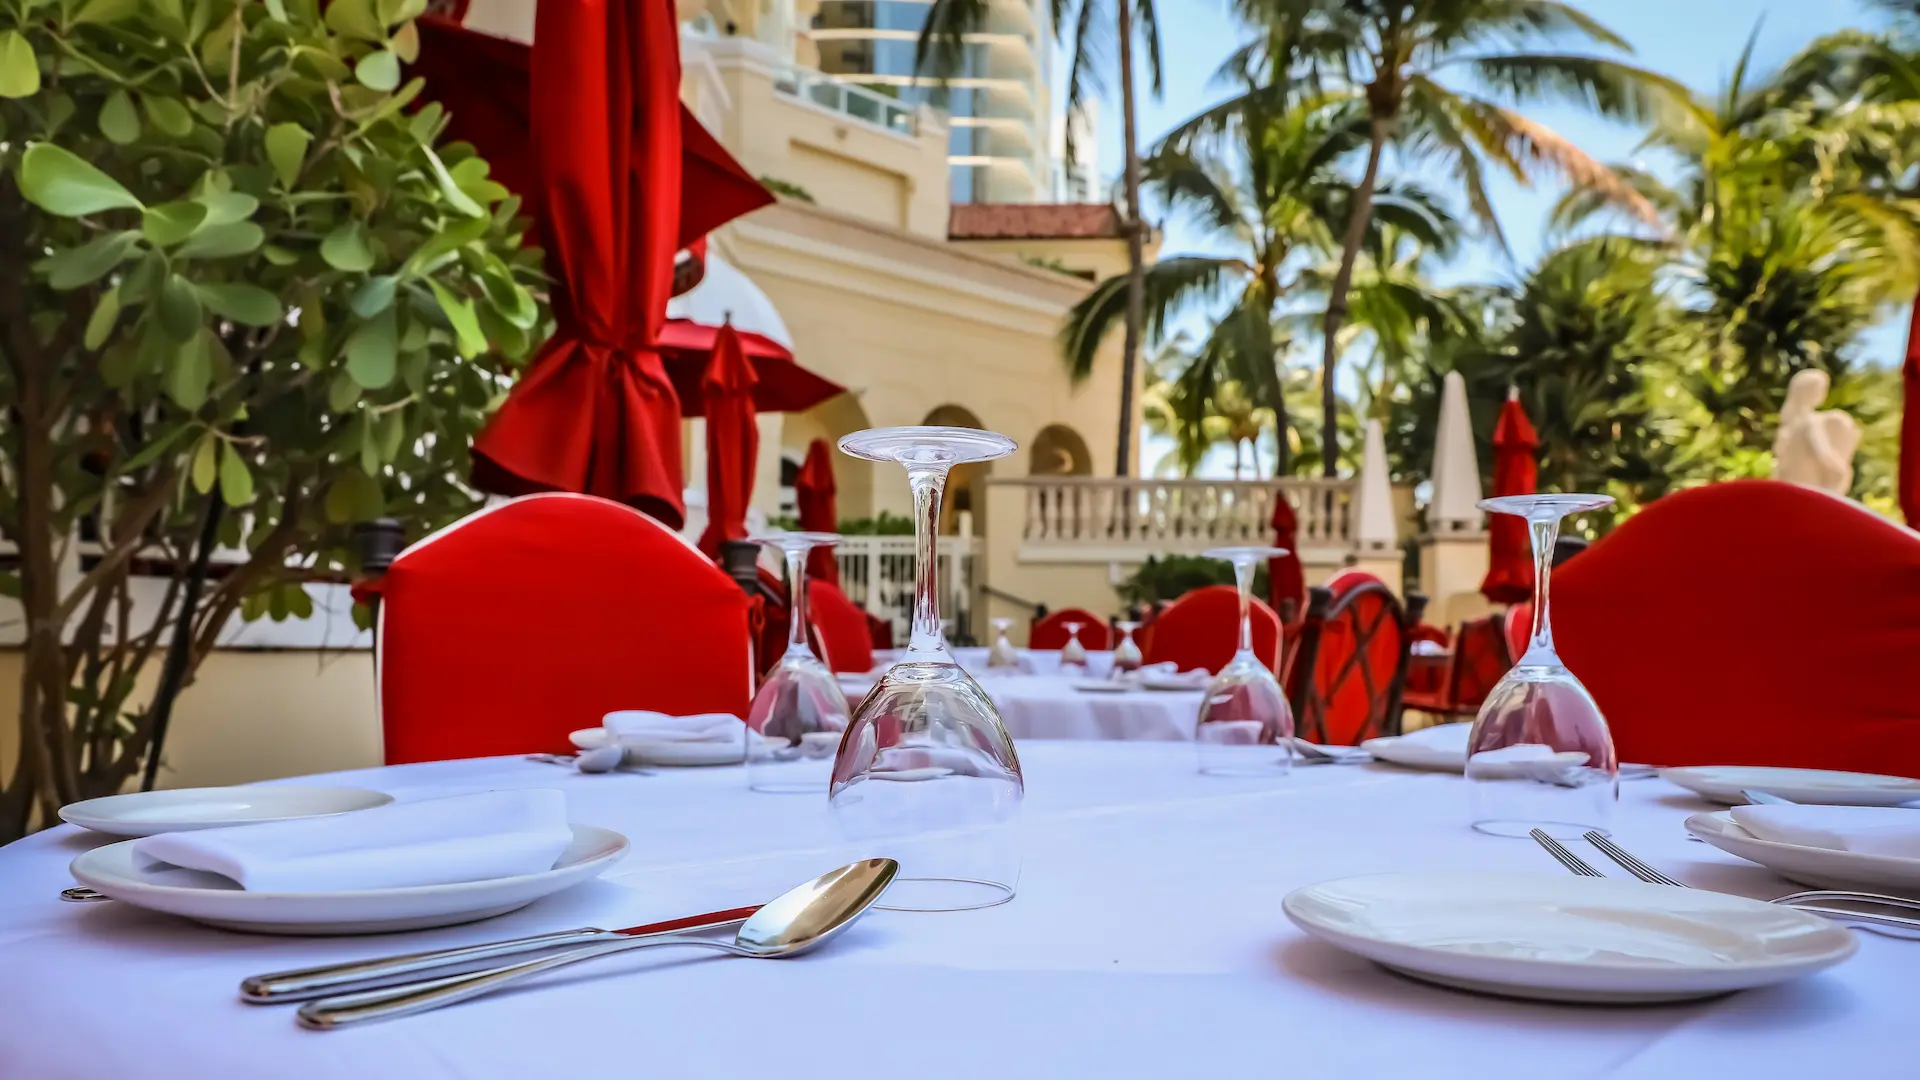 REVIEW Il Mulino New York Sunny Isles: el mejor restaurante de cocina italiana de Miami